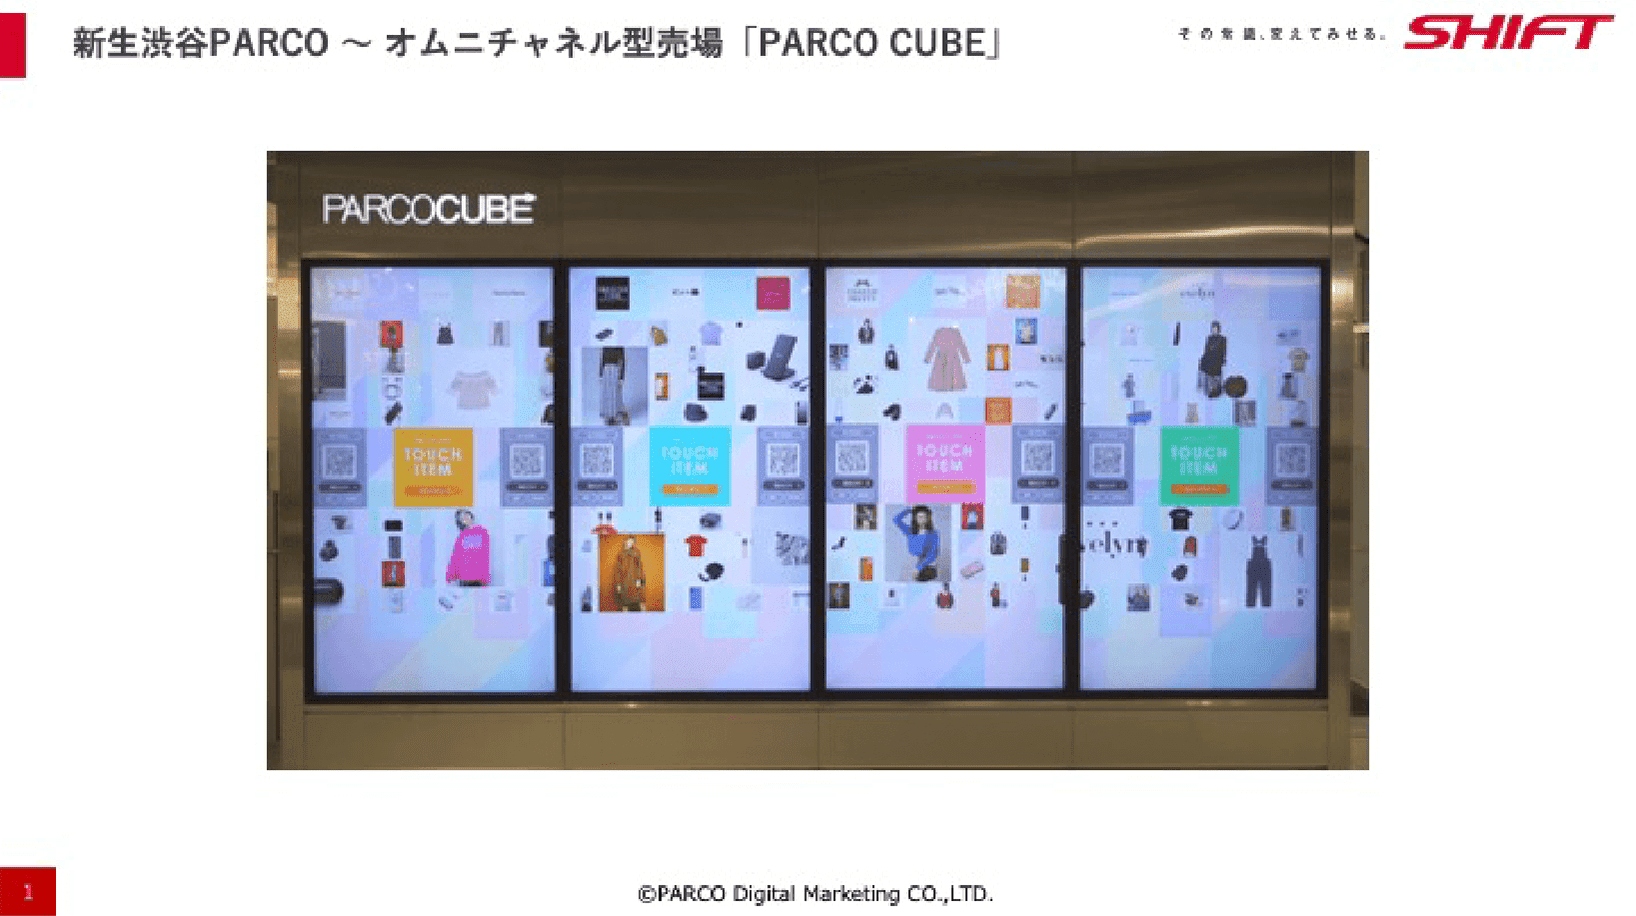 新生渋谷PARCO オムニチャネル型売場「PARCO CUBE」イメージ図